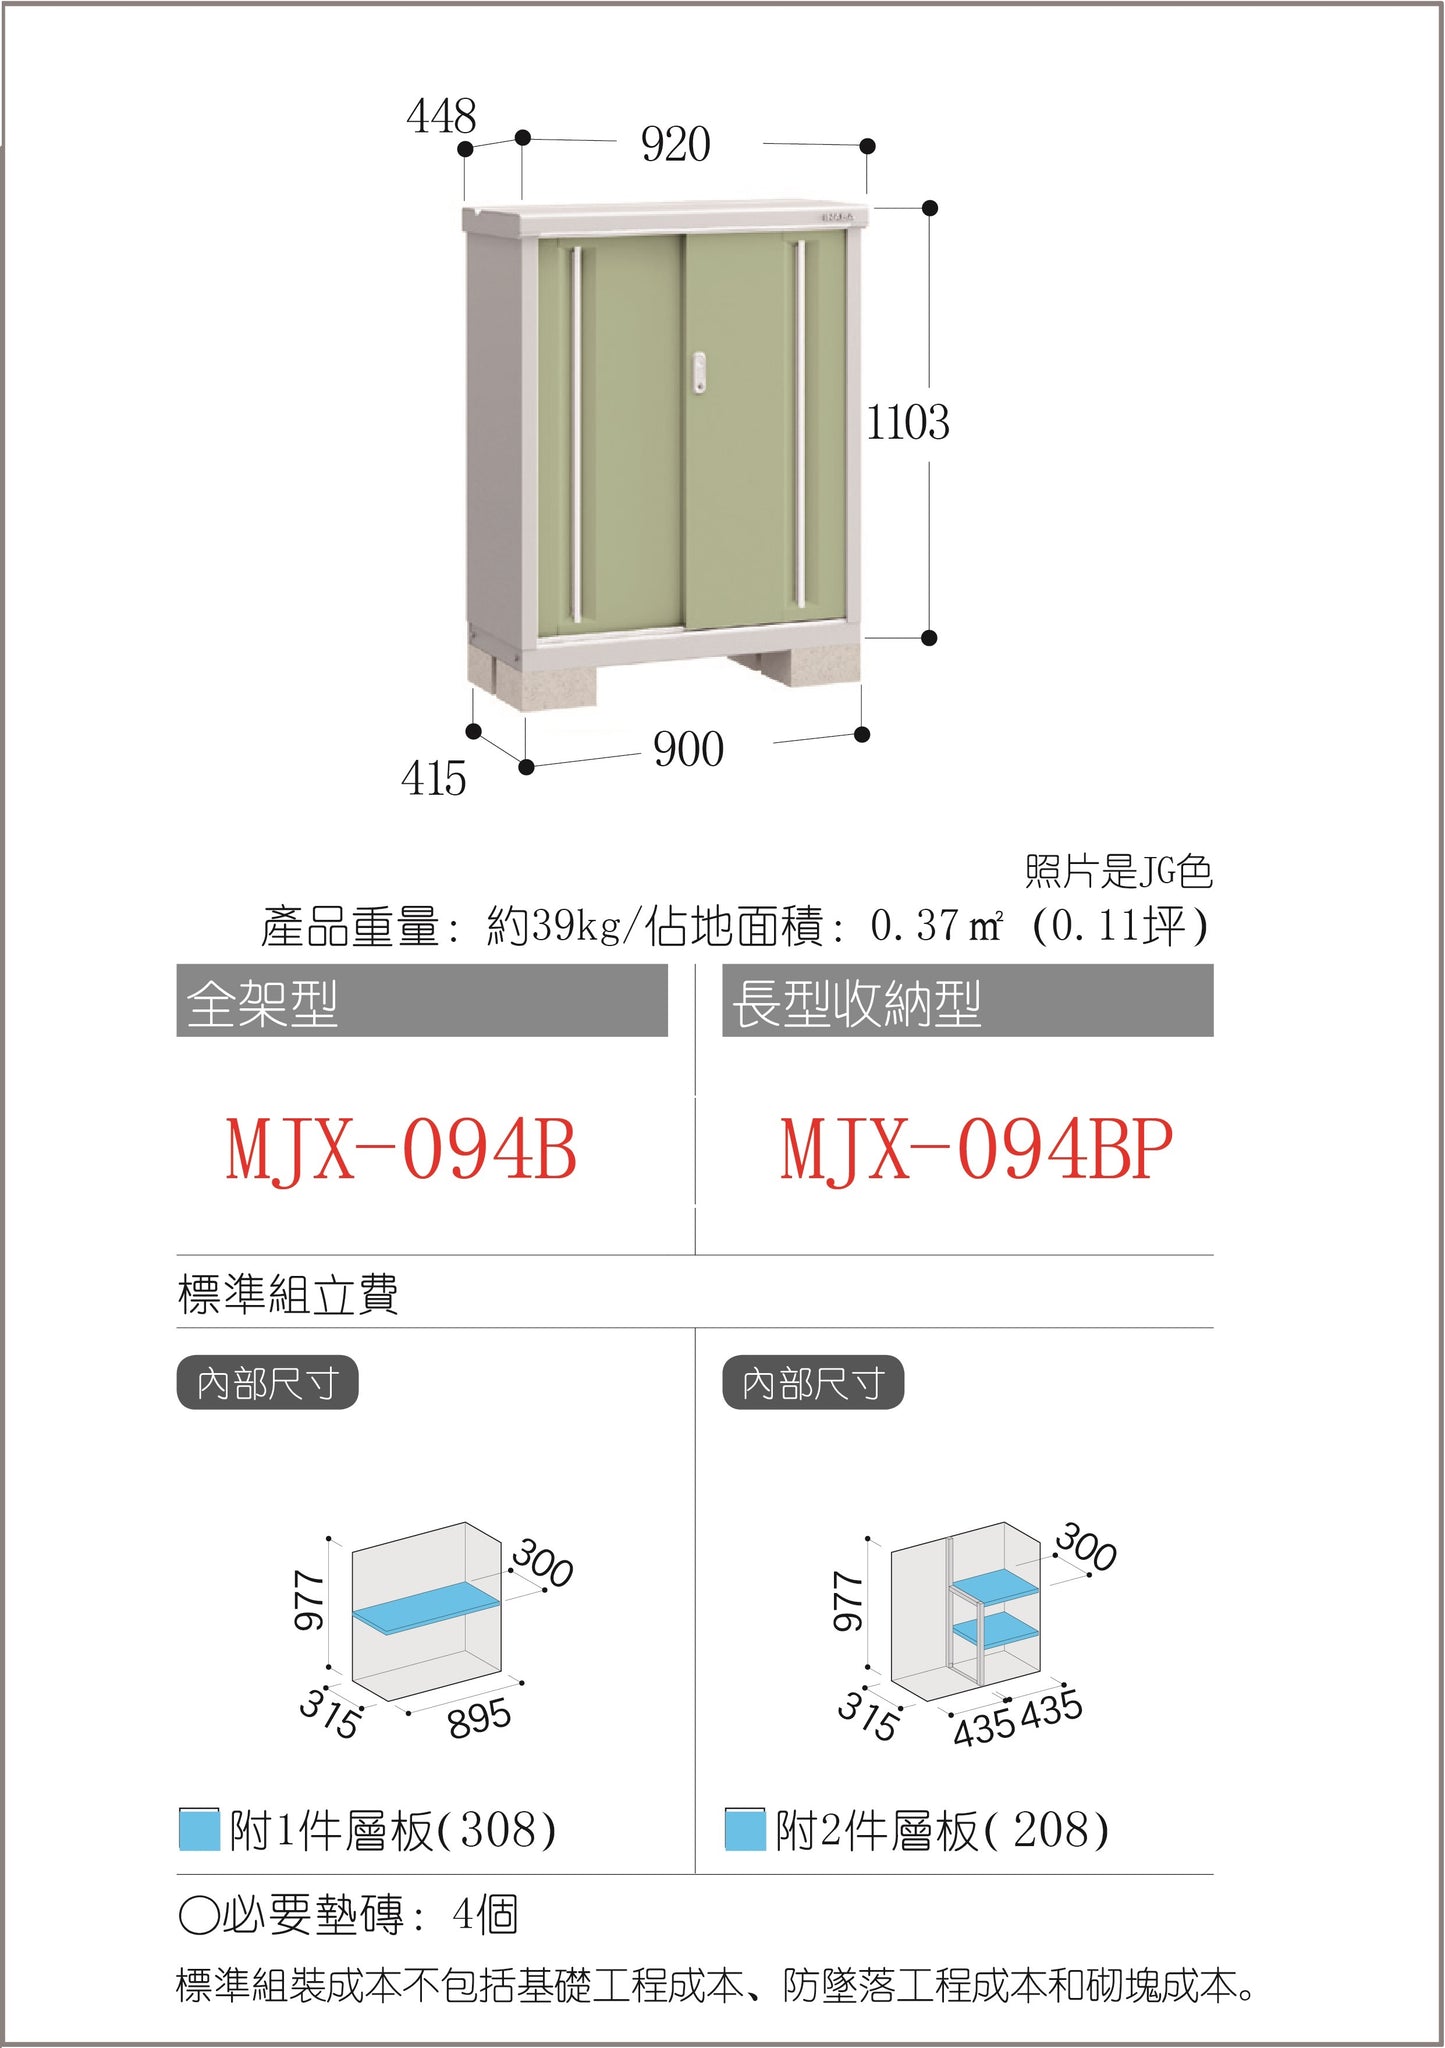 *Pre-order* Inaba MJX-094B (W920XD448XH1103mm) 0.455m3